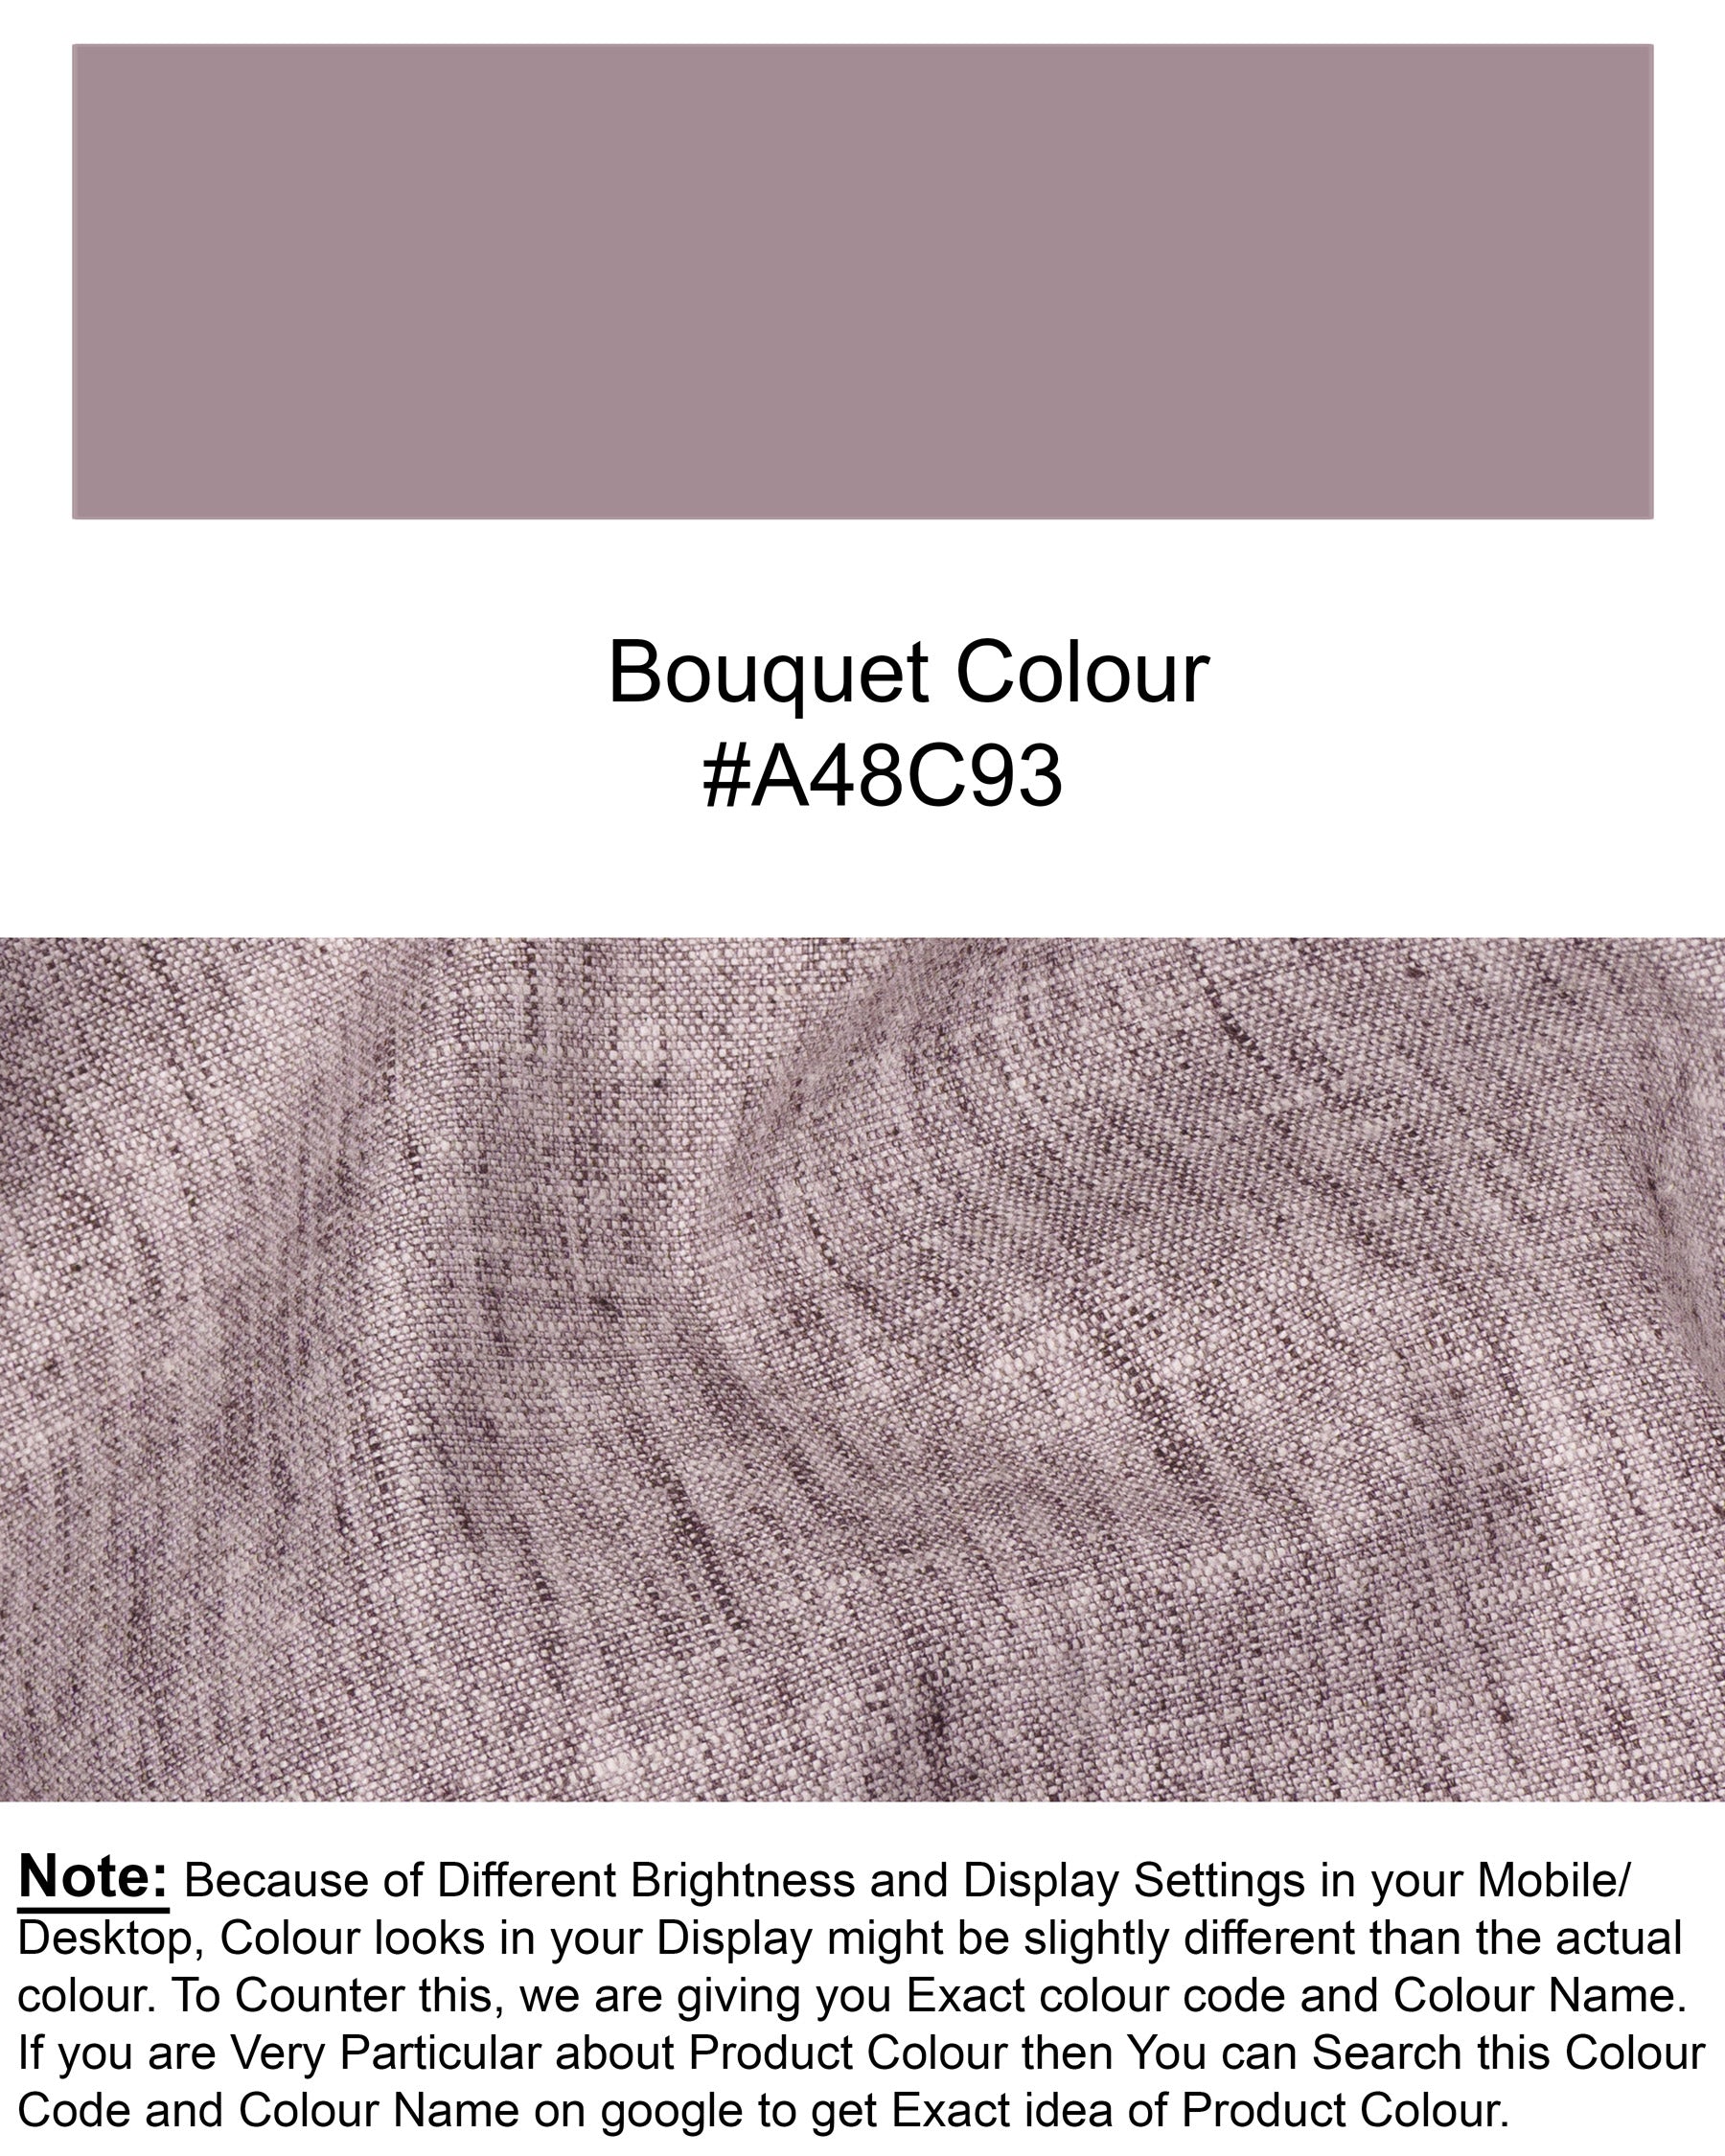 Bouquet Purple Luxurious Linen Tuxedo Suit ST1474-BKL-36,ST1474-BKL-38,ST1474-BKL-40,ST1474-BKL-42,ST1474-BKL-44,ST1474-BKL-46,ST1474-BKL-48,ST1474-BKL-50,ST1474-BKL-52,ST1474-BKL-54,ST1474-BKL-56,ST1474-BKL-58,ST1474-BKL-60